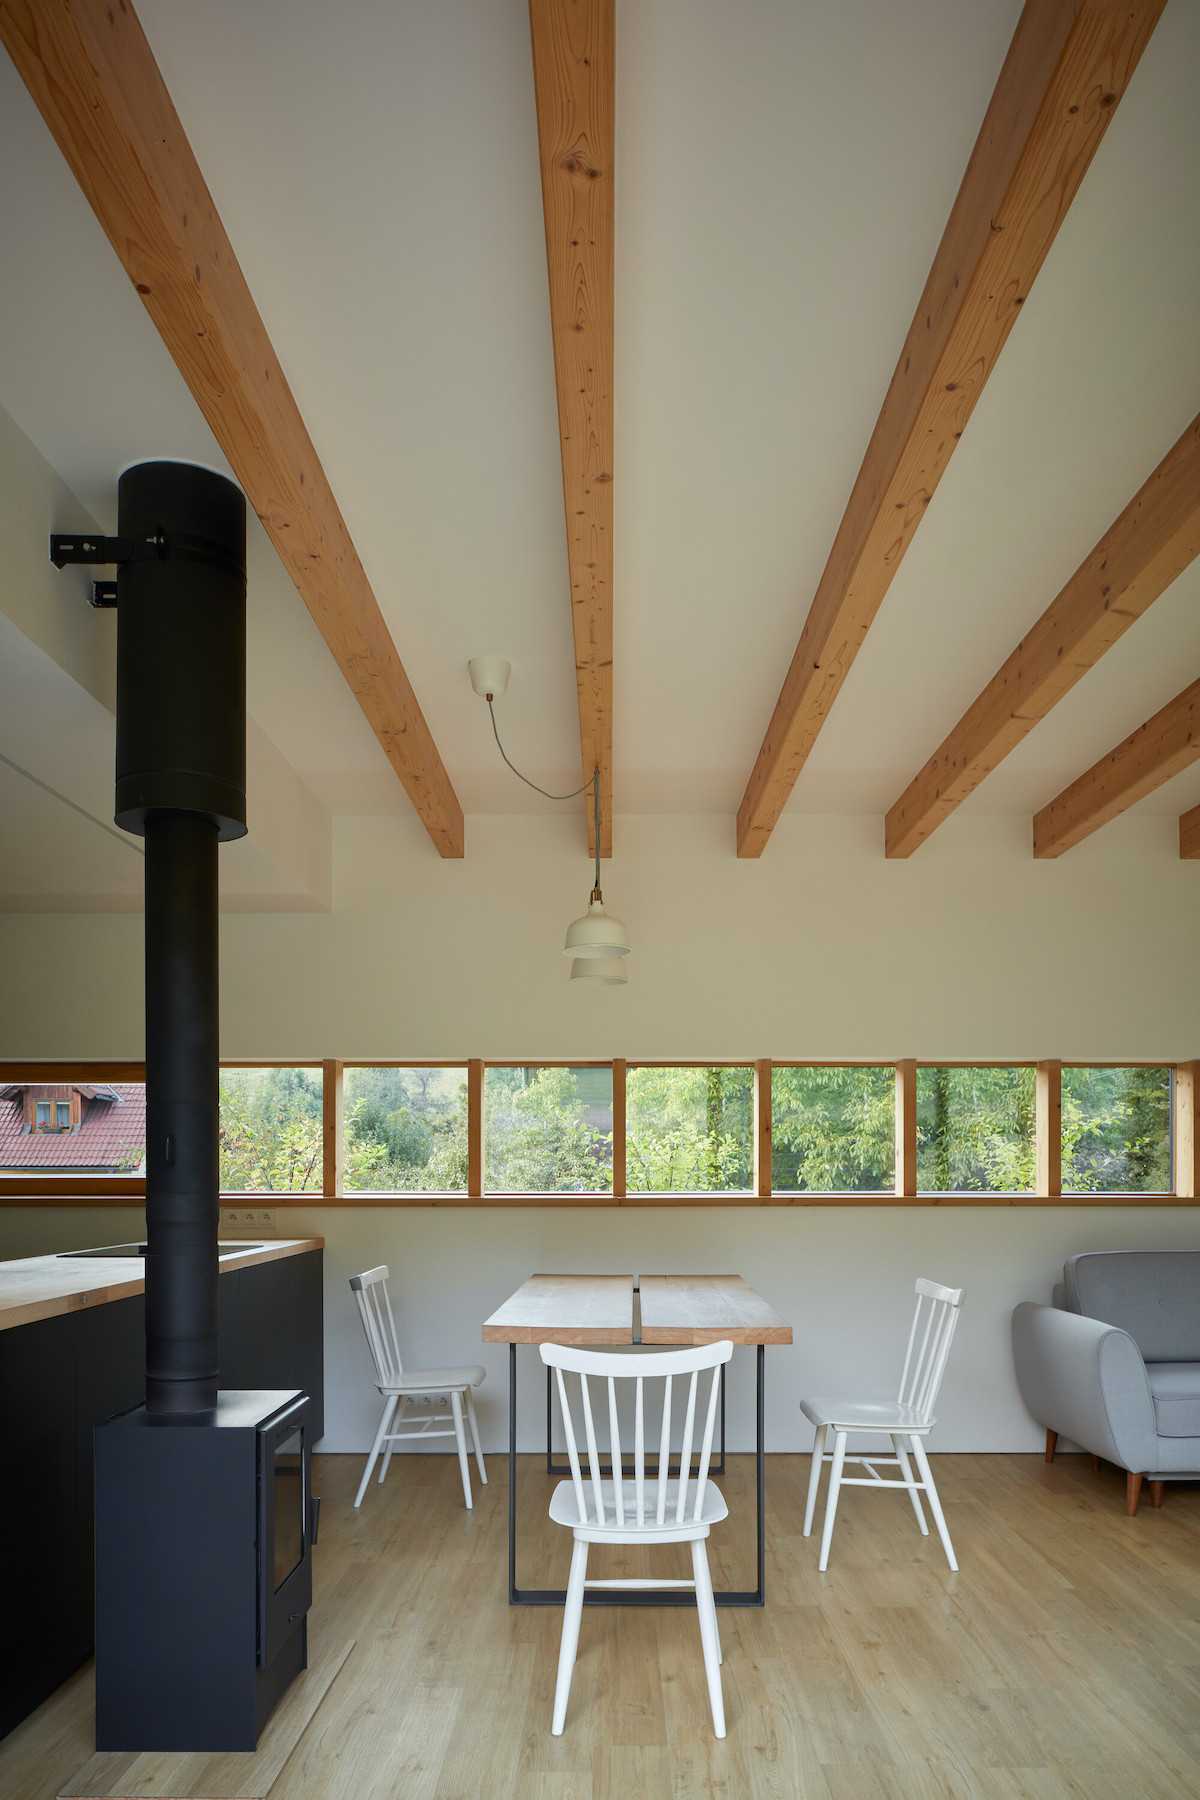 Moderný bielodrevený vzdušný prírodný interiér domu